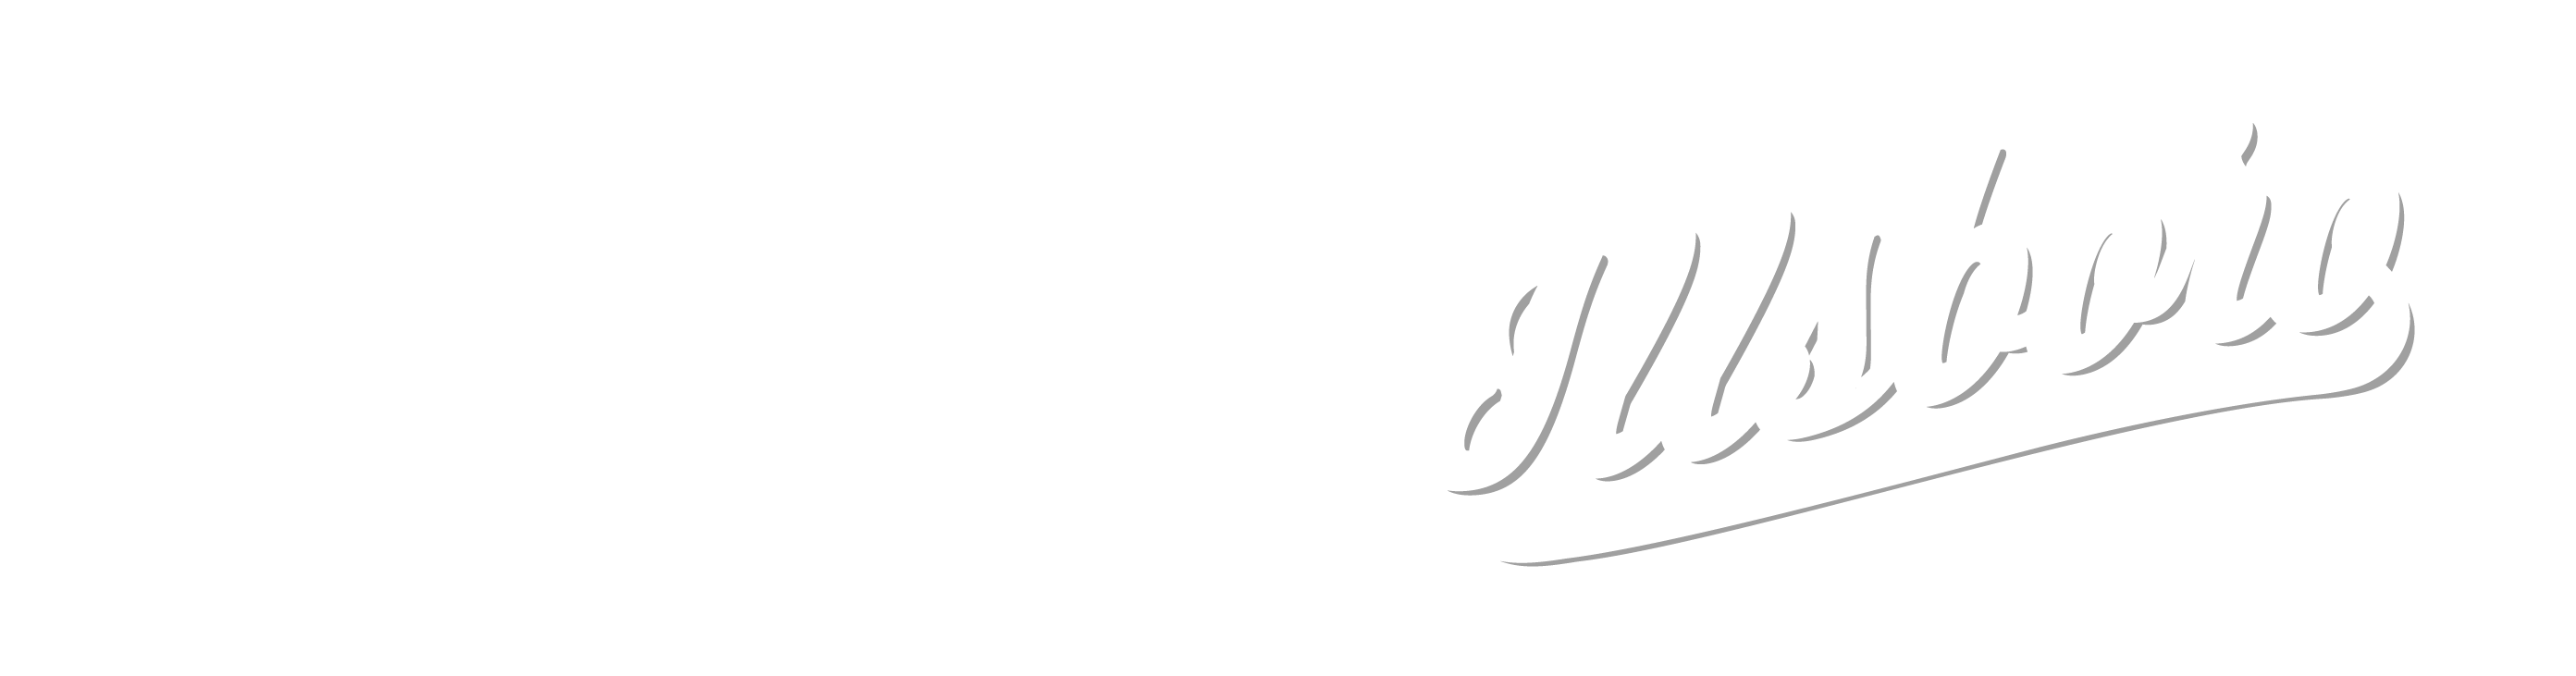 sleev3s_Illsboro_Logo_White